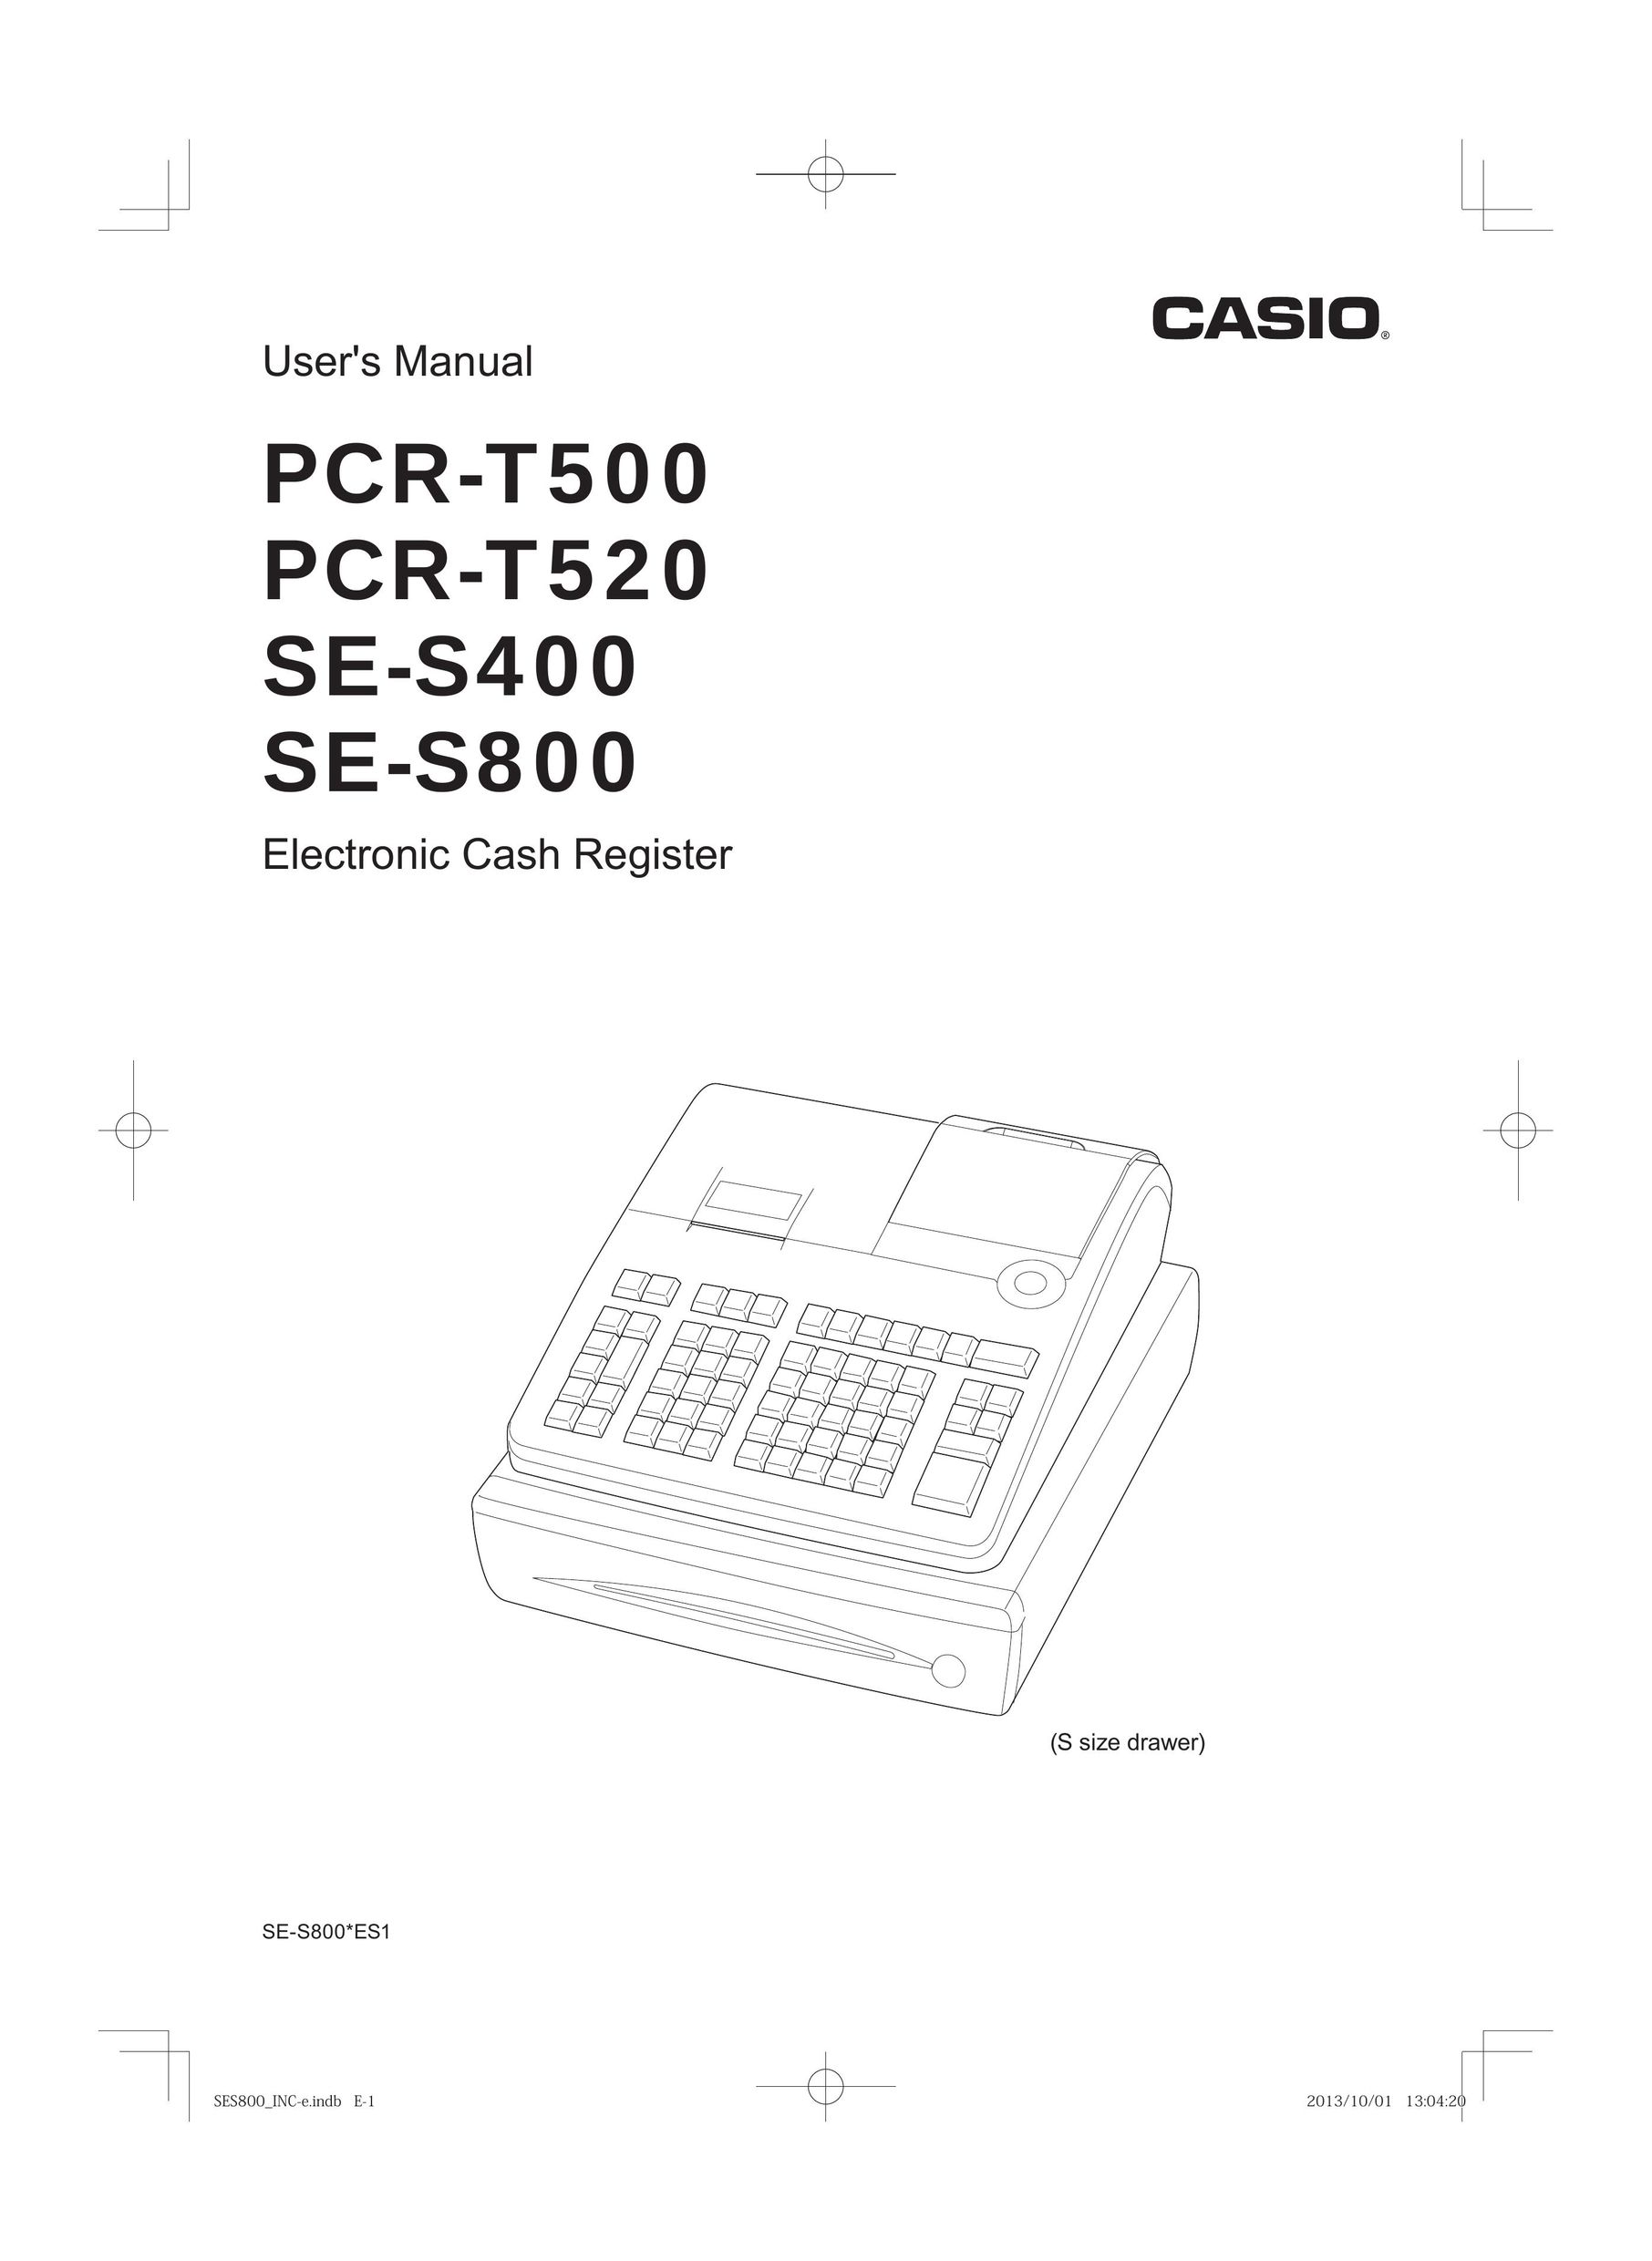 Casio PCR-T500 Cash Register User Manual